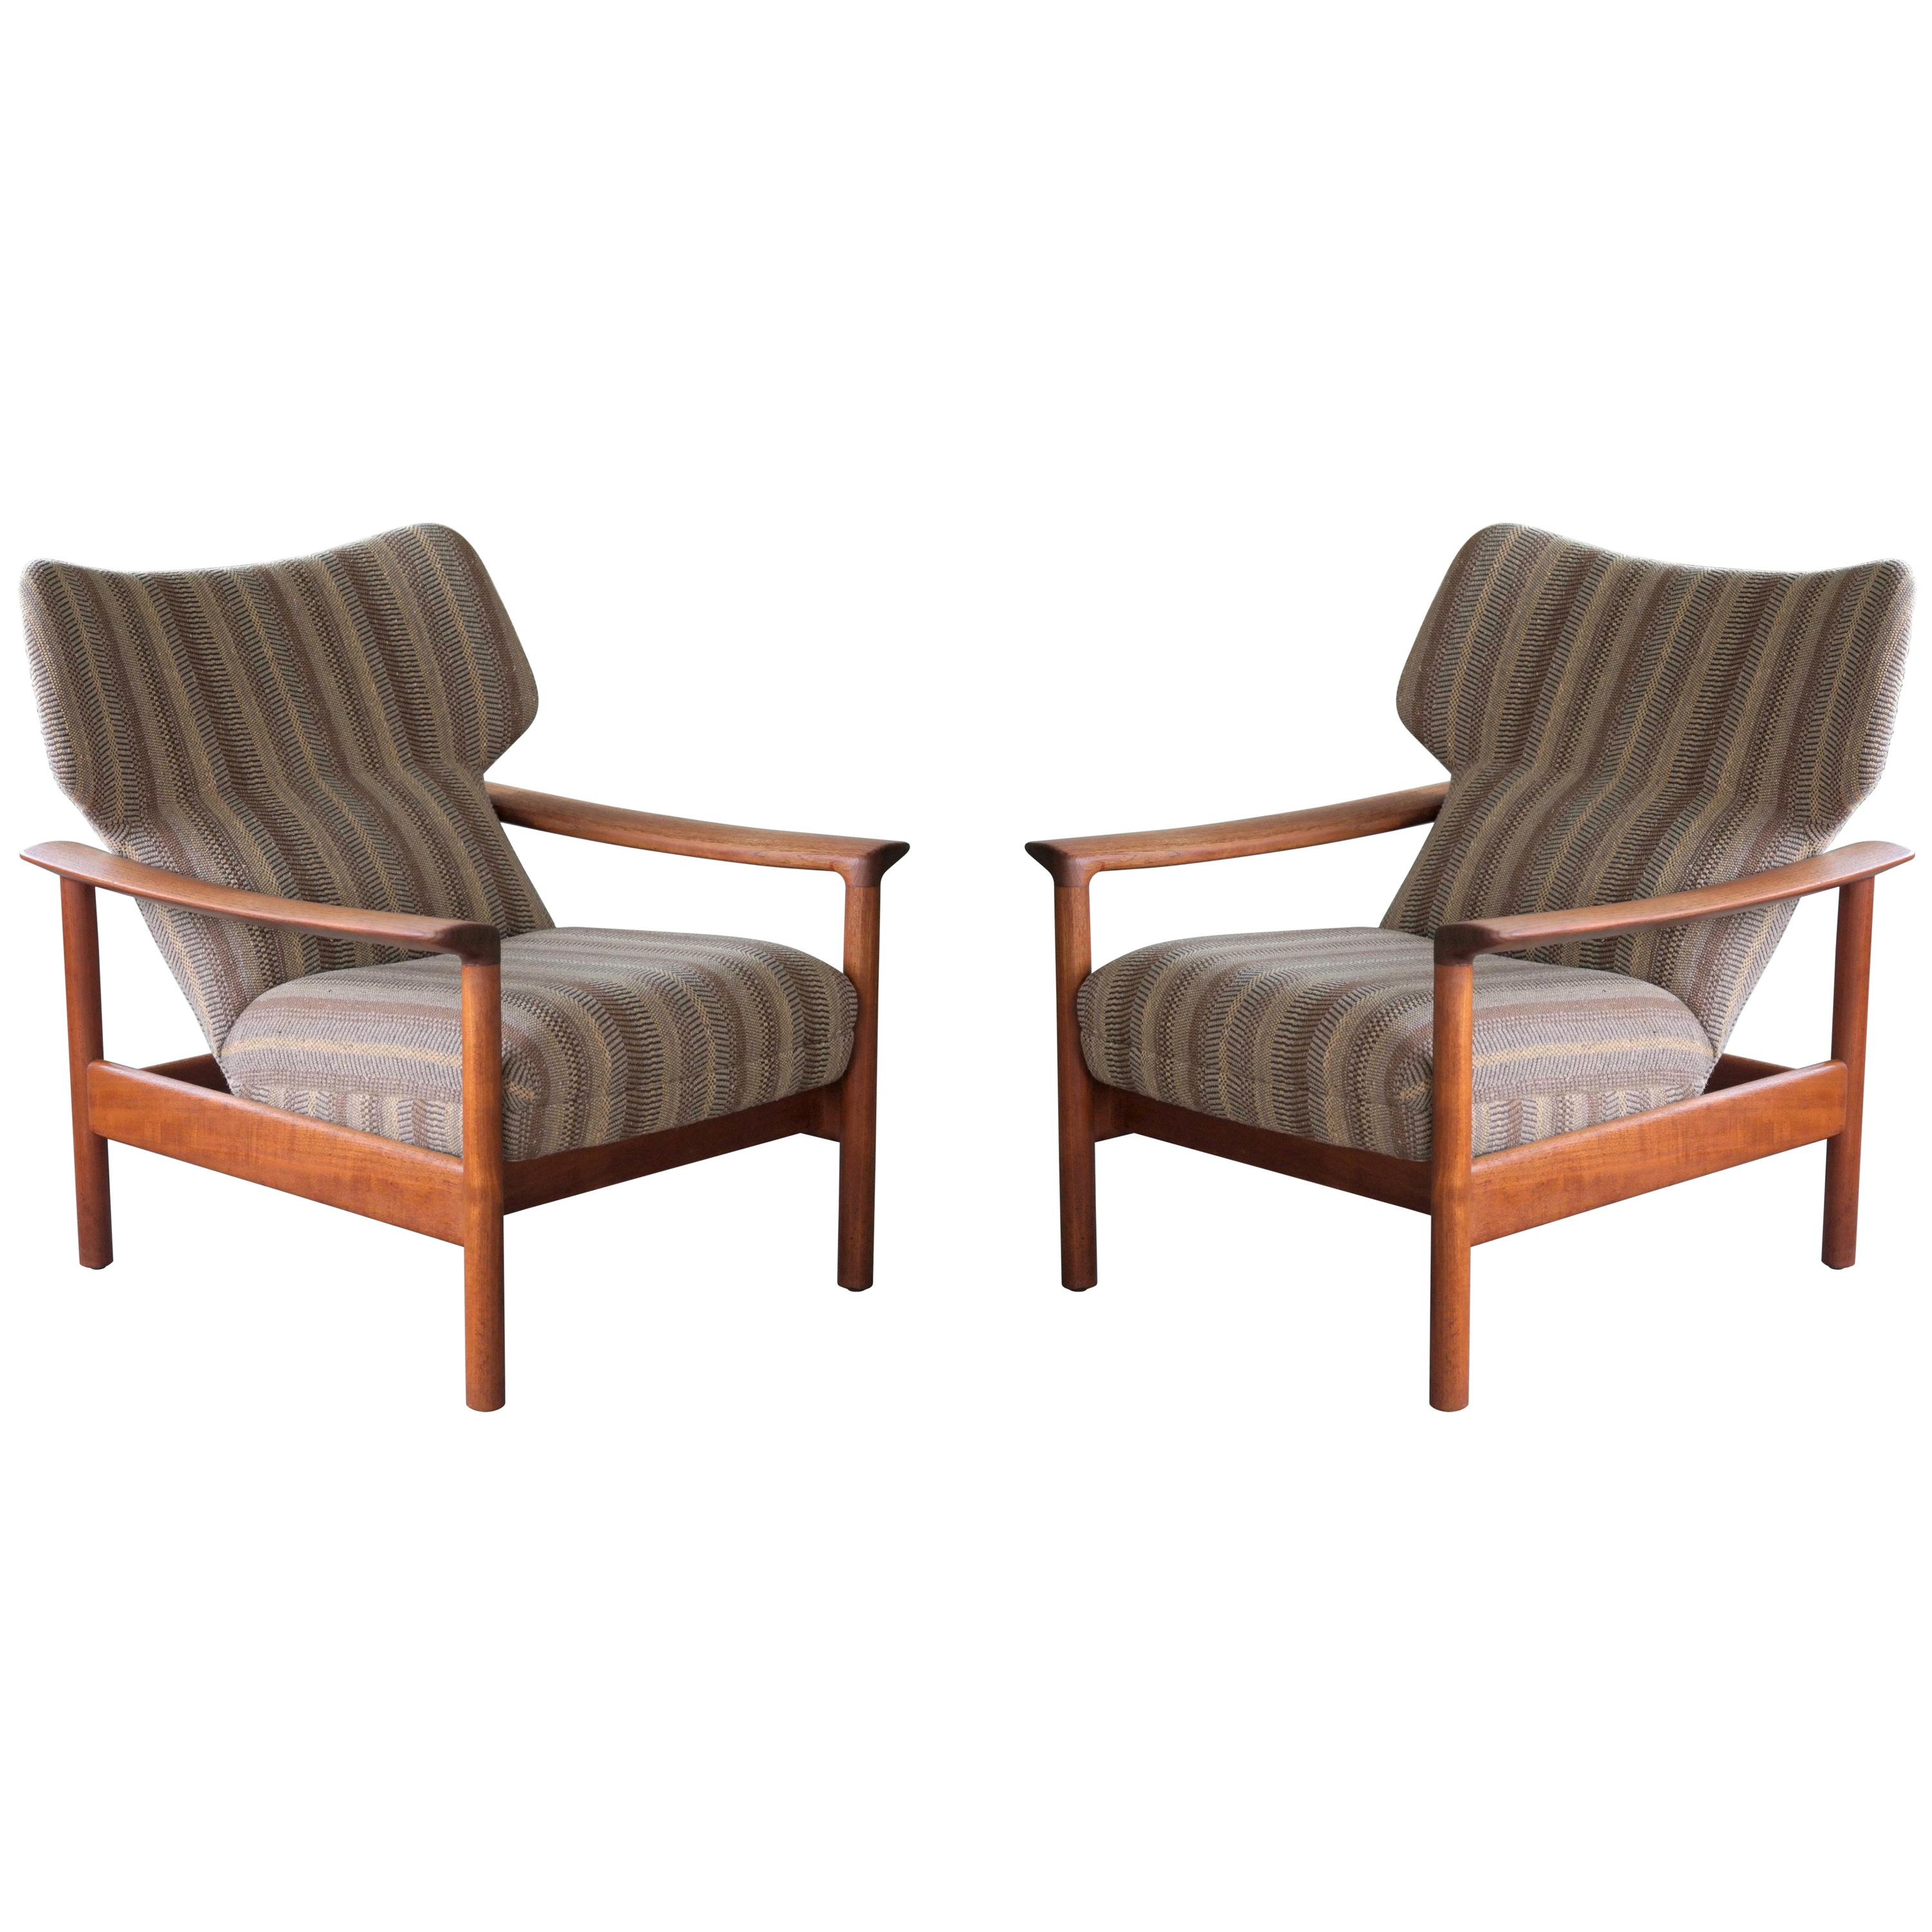 Pair of Danish Midcentury Easy Chairs in Teak